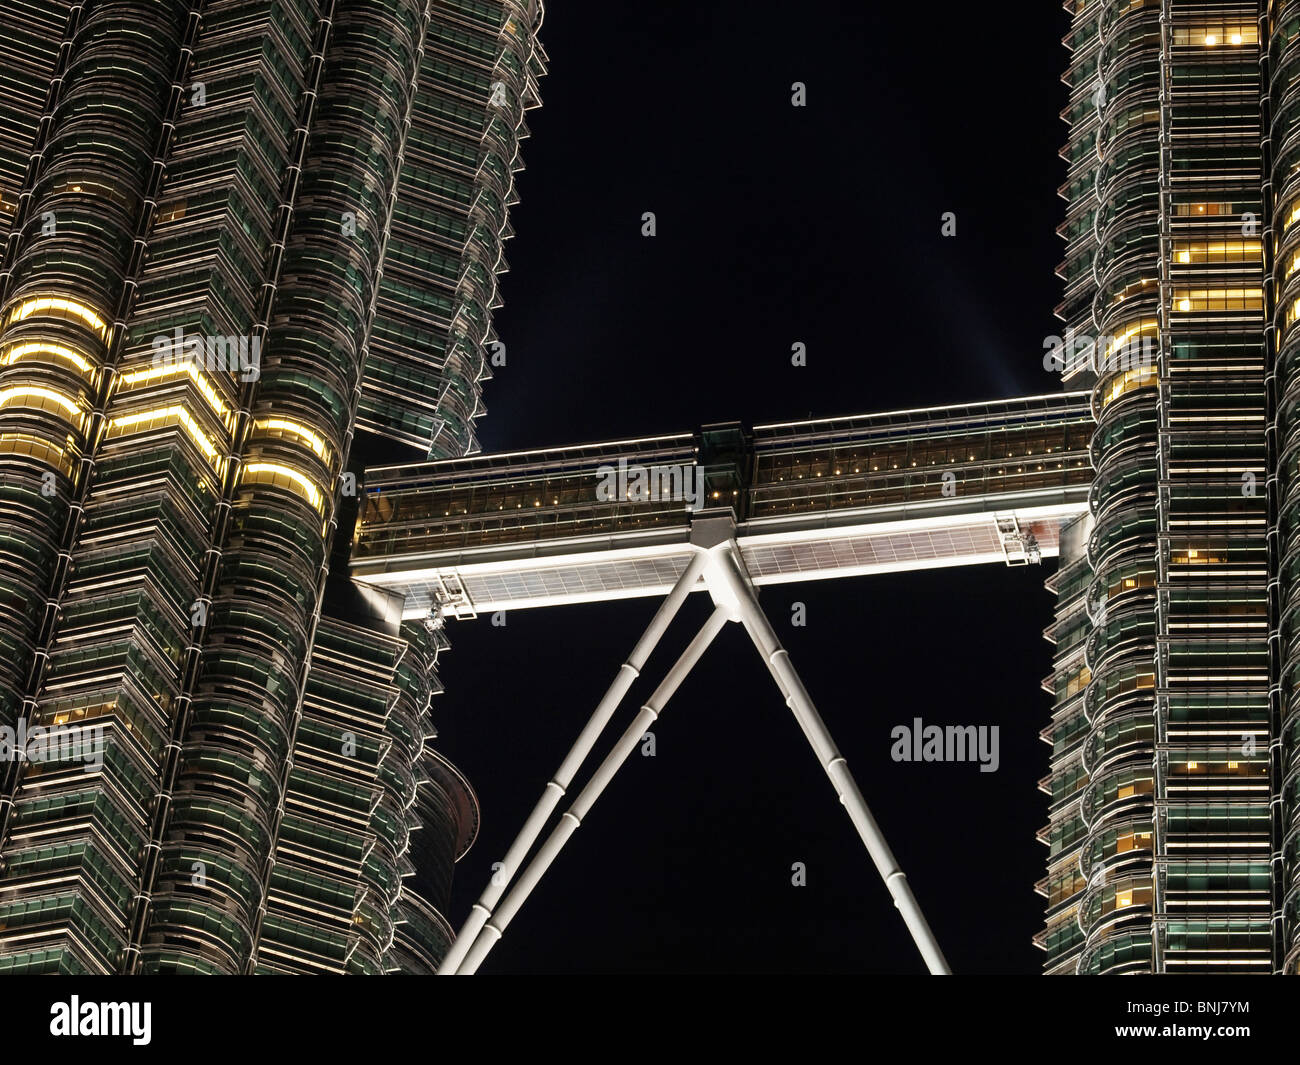 Petronas towers at night Stock Photo